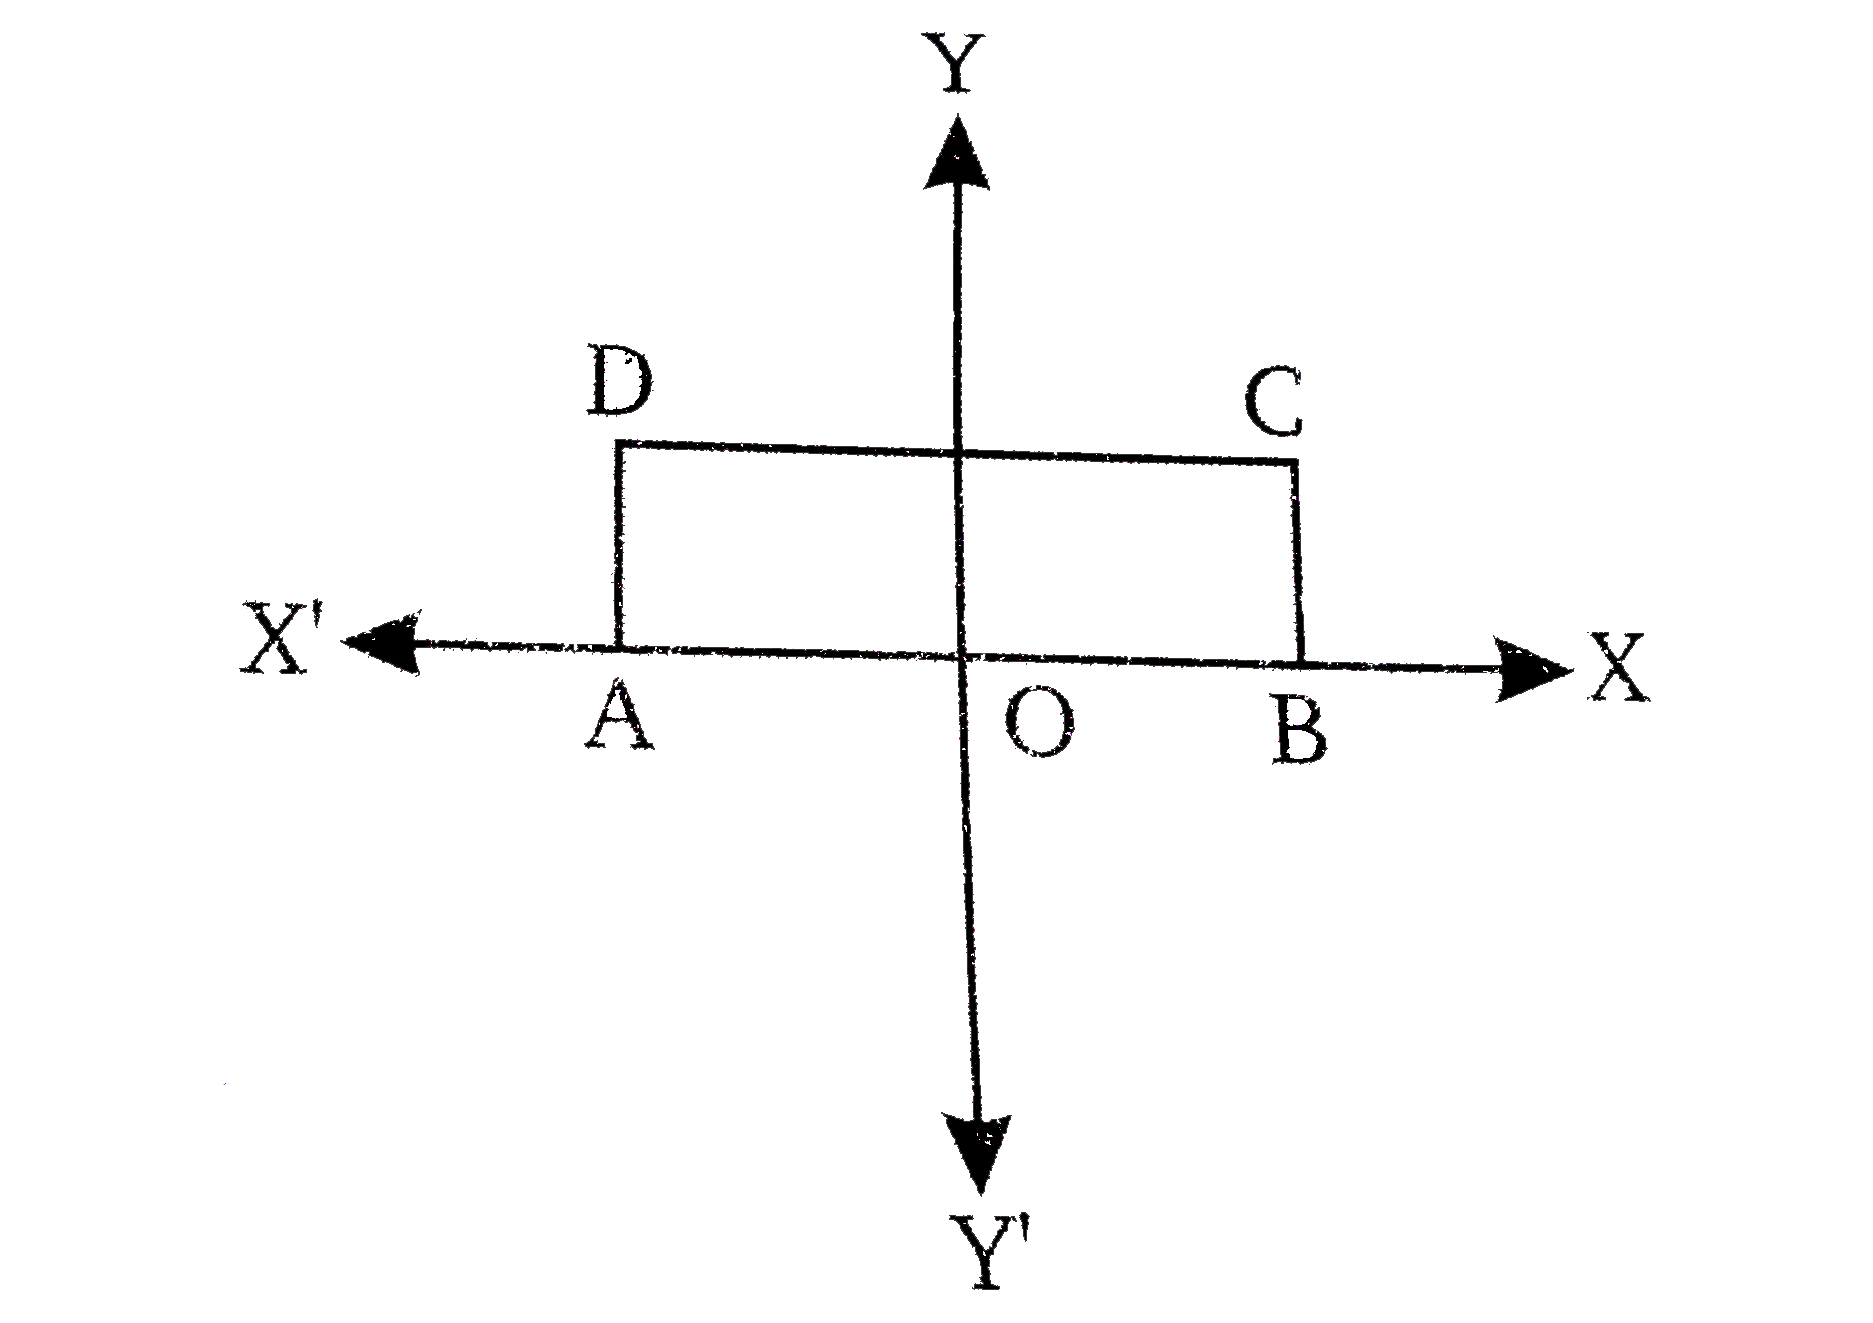 संलग्न चित्र में ABCD  एक आयत है जिसकी लम्बाई 6 सेमी तथा चौड़ाई 3 सेमी है । O,रेखा AB का मध्य बिंदु है ।A,B,C व Dके निर्देशांक ज्ञात कीजिए ।